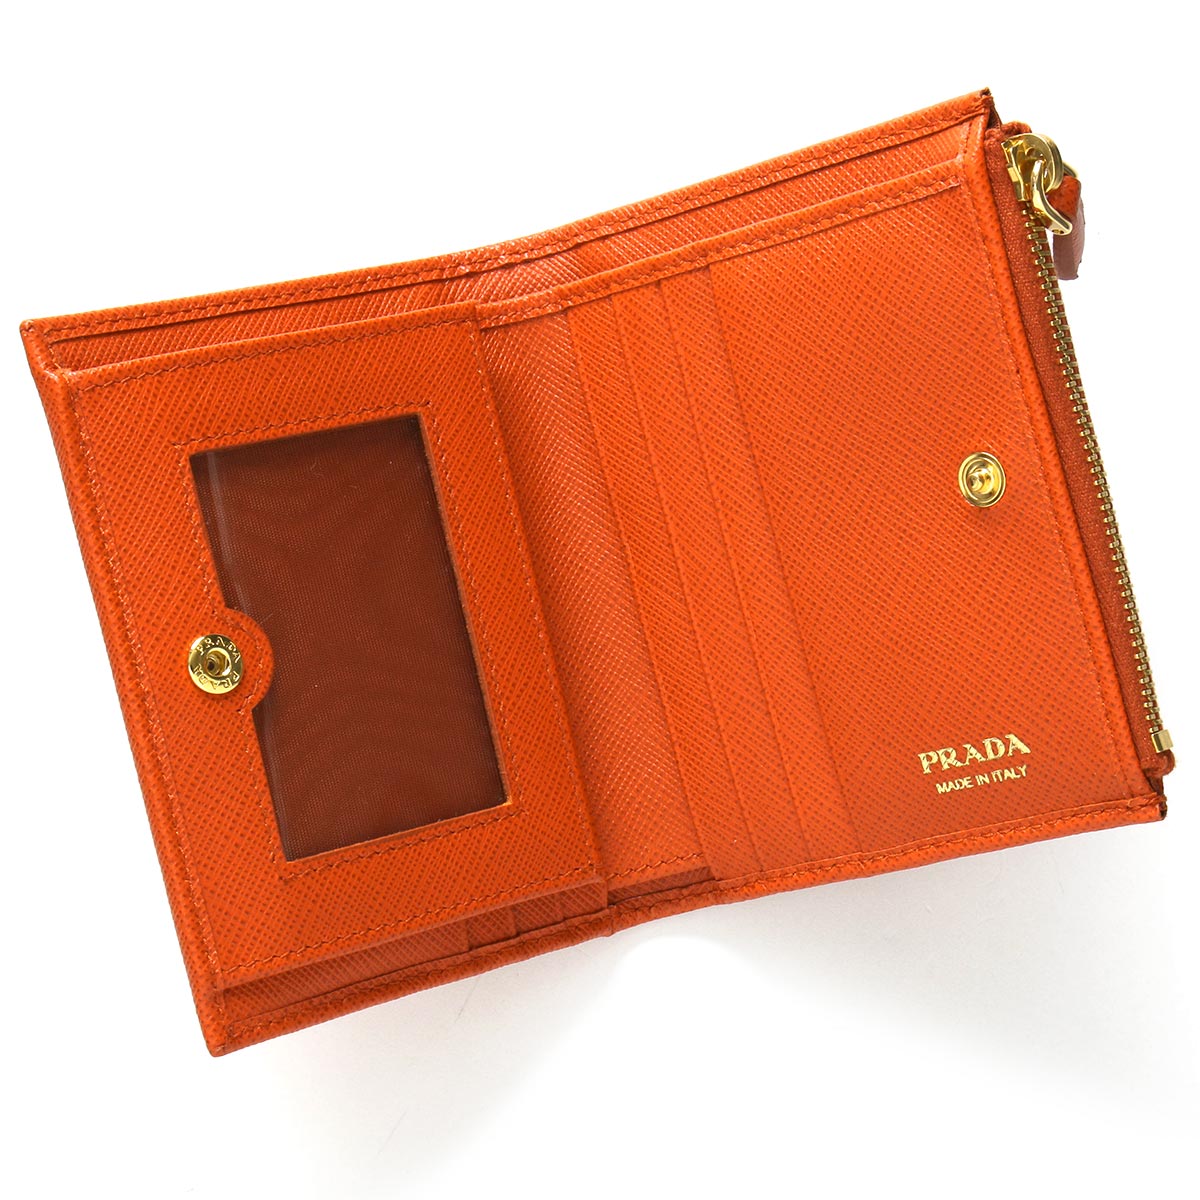 プラダ 二つ折り財布 財布 レディース サフィアーノ メタル アランチョオレンジ 1ML023 QWA F0049 PRADA